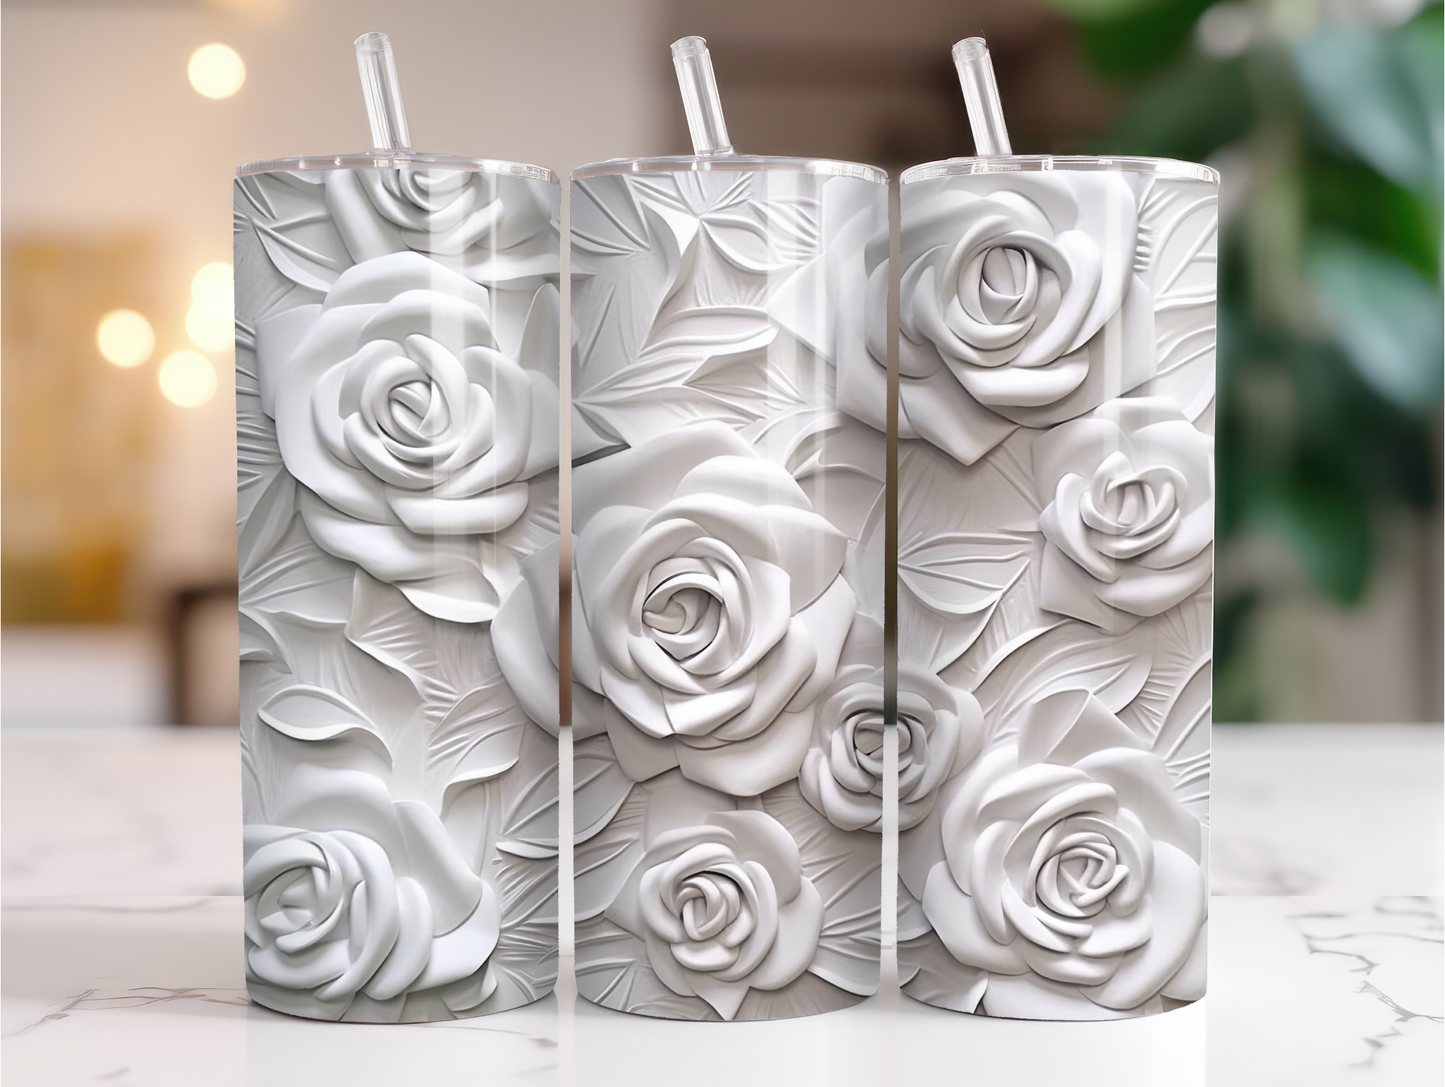 3D white roses